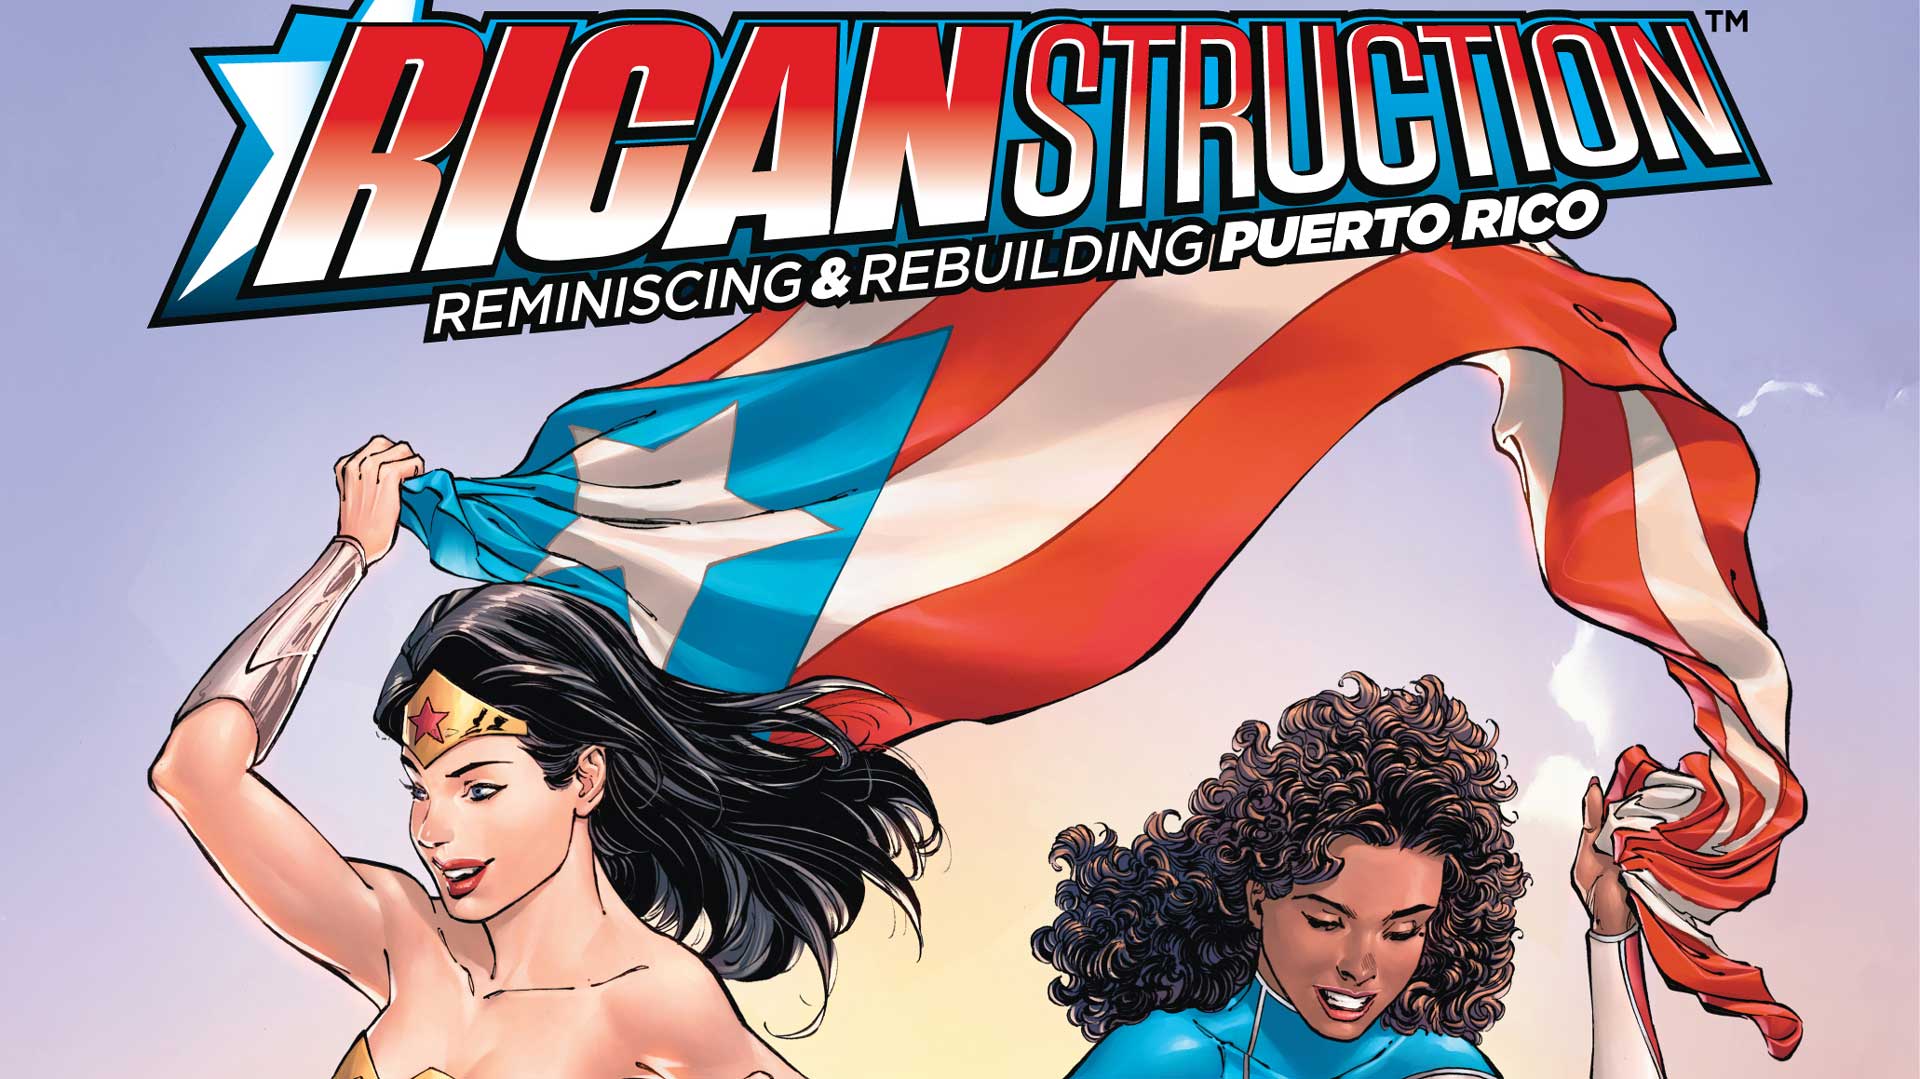 "Ricanstruction", el cómic de superhéroes que reconstruye Puerto Rico